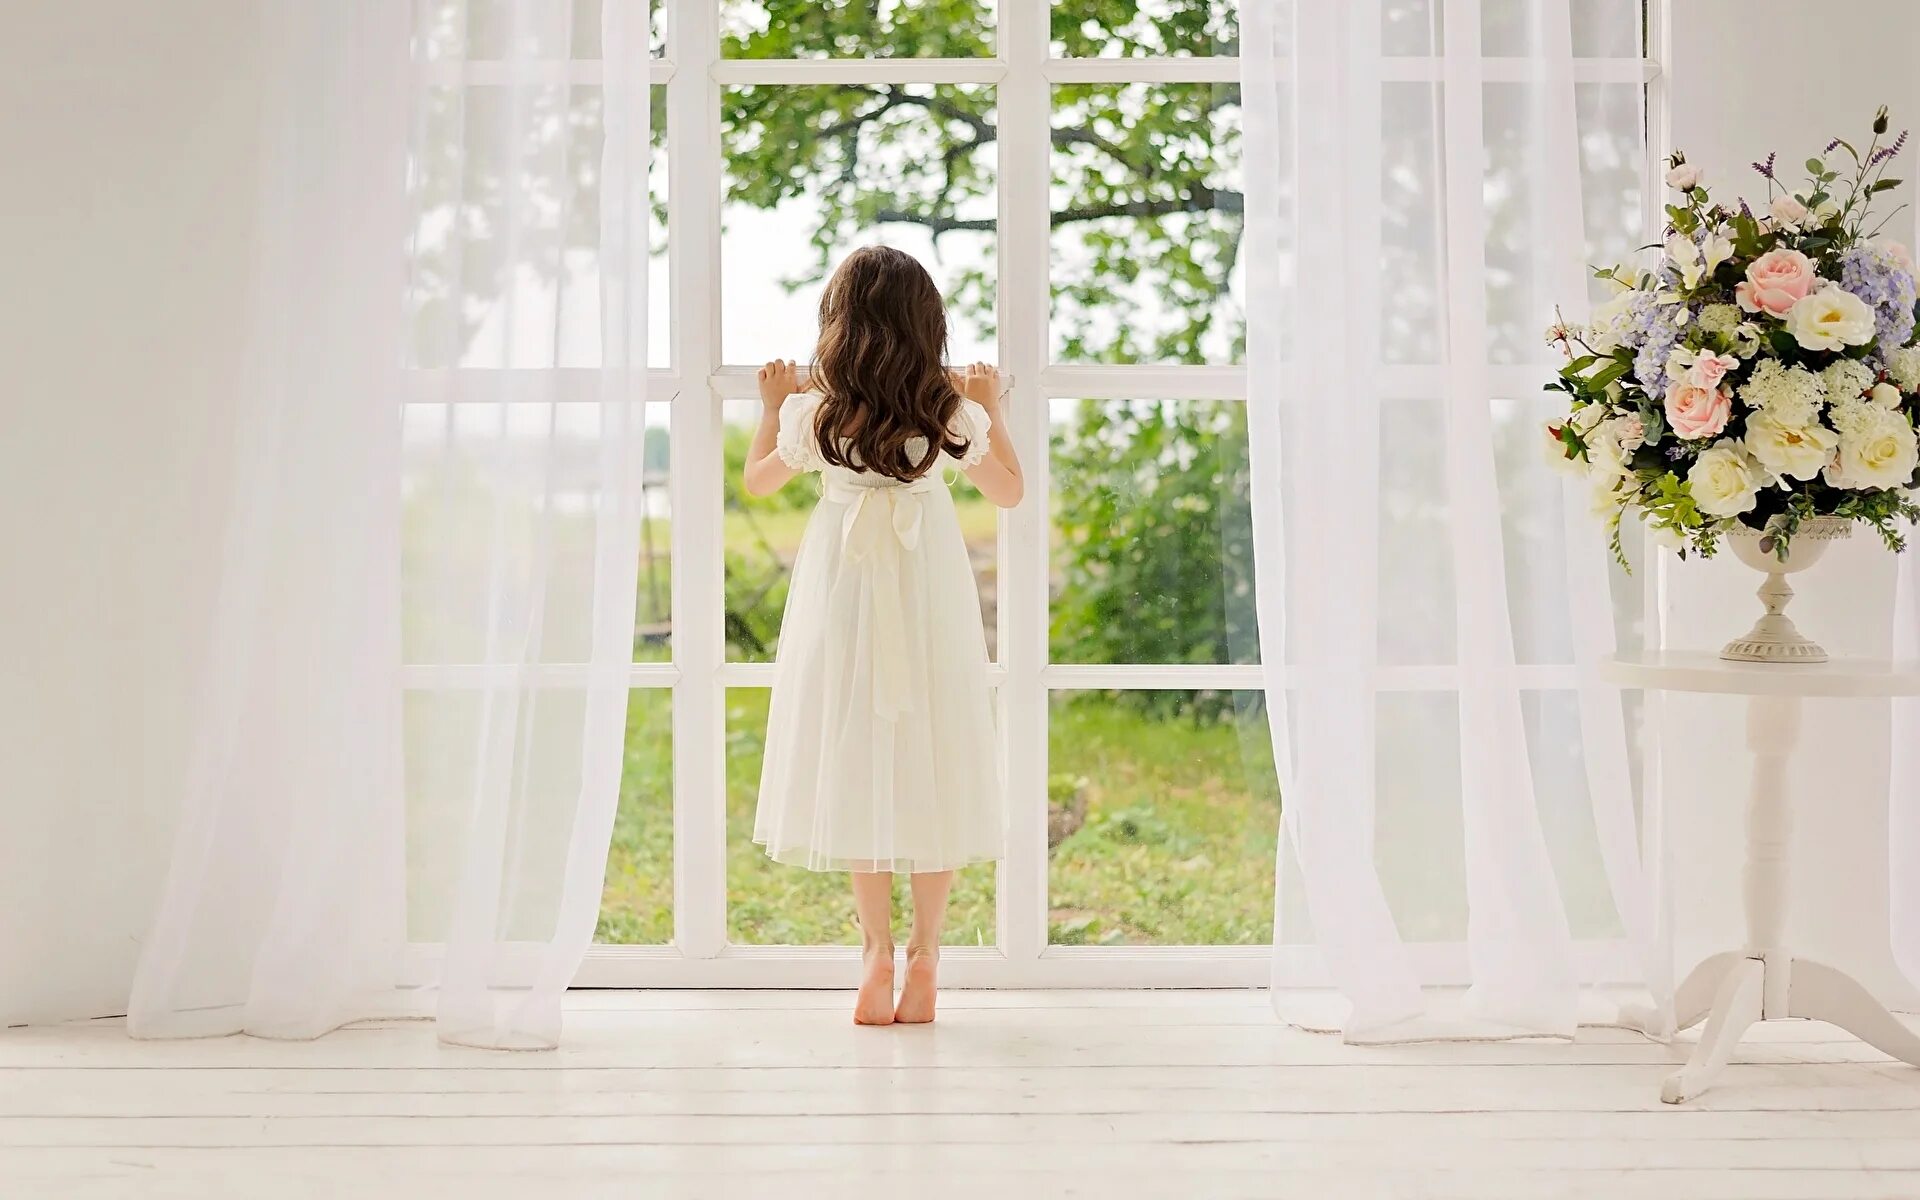 За окном белом платье. Фон для фотосессии. Белое платье для девочки. Ребенок на фоне окна.